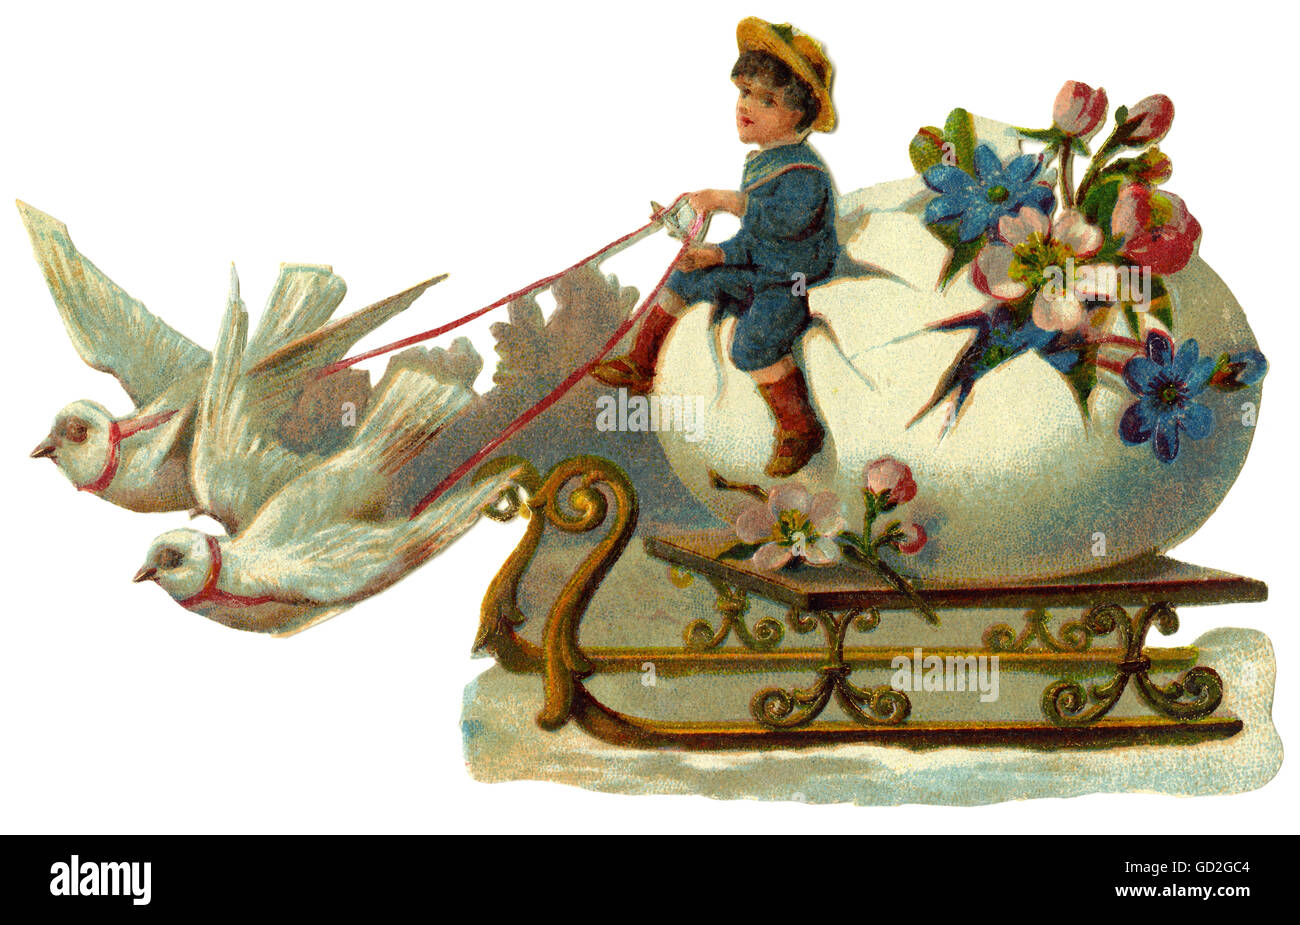 Festivités, Pâques, colombes tirant traîneau avec oeuf de Pâques, rebuts-image, Allemagne, vers 1912, droits additionnels-Clearences-non disponible Banque D'Images